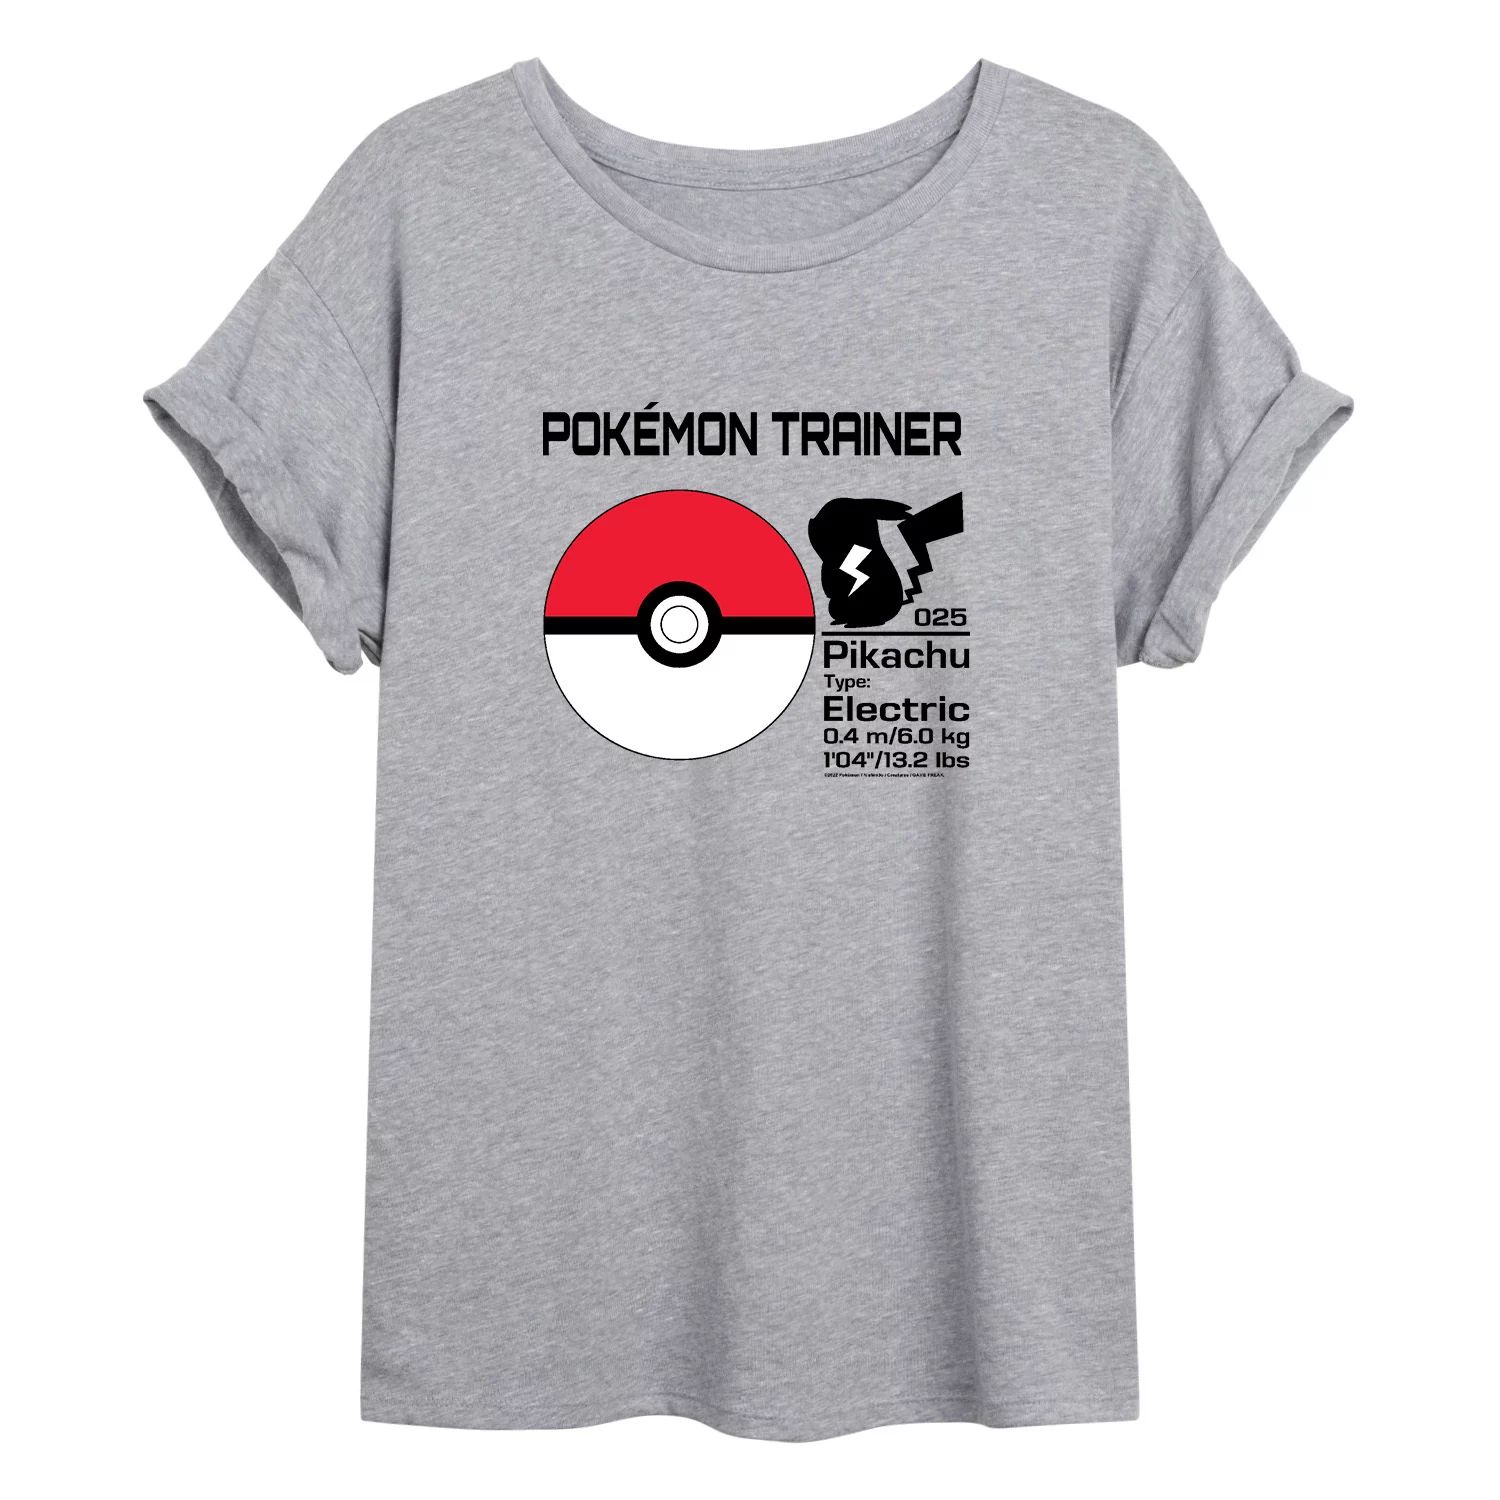 Детская футболка с рисунком Pokémon Trainer Poké Ball Licensed Character